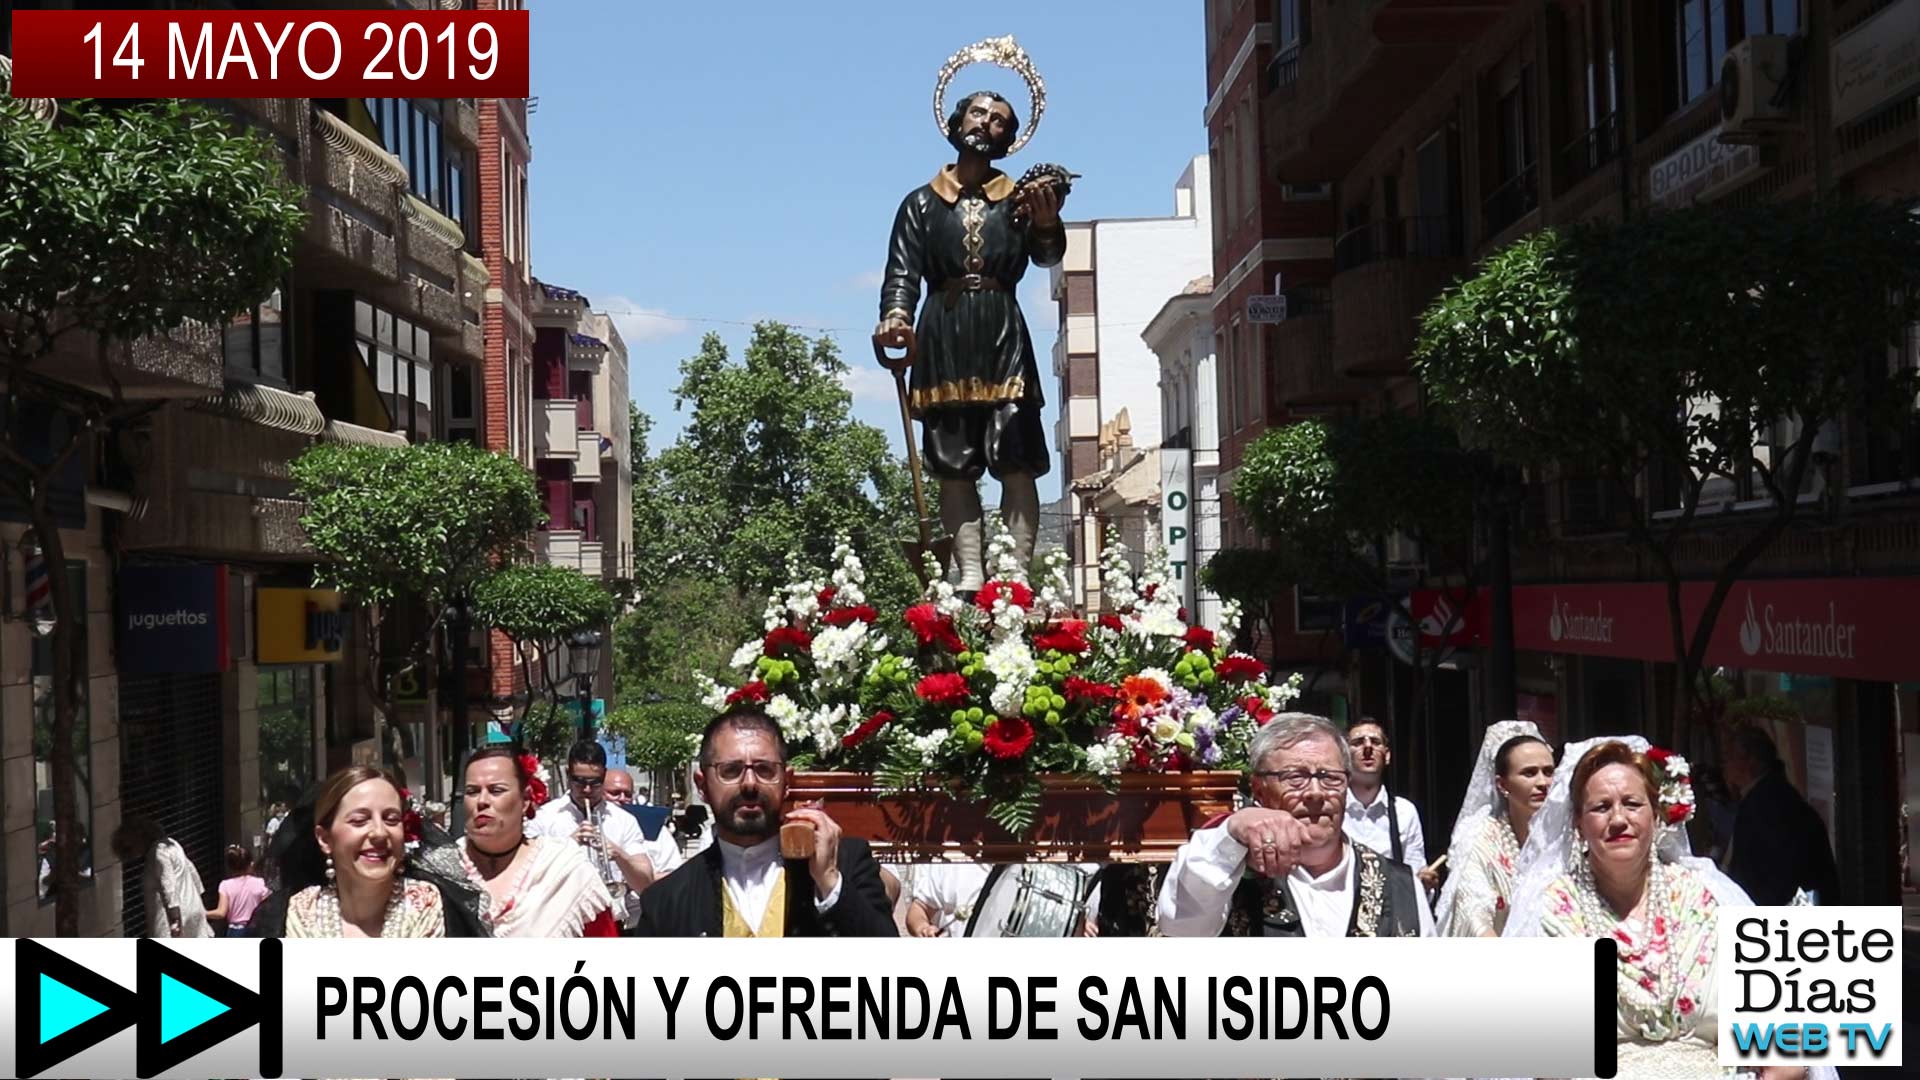 Y OFRENDA DE SAN ISIDRO - 14 MAYO 2019 - Siete Días Yecla